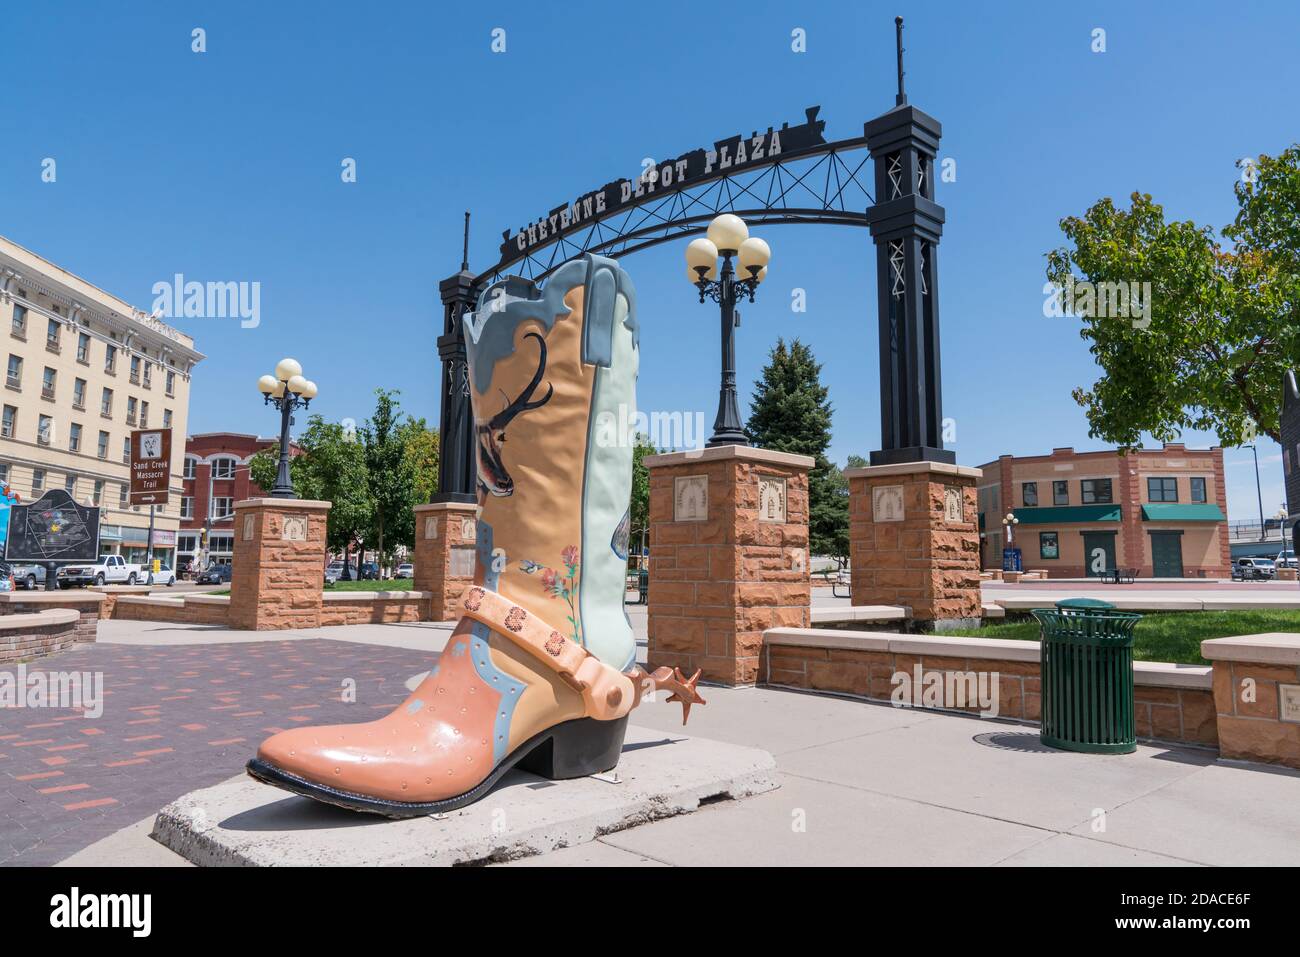 Cheyenne, WY - 8 de agosto de 2020: Gran escultura de arte de botas de vaquero fuera en el histórico Parque Cheyenne Depot en el centro de Cheyenne, Wyoming Foto de stock